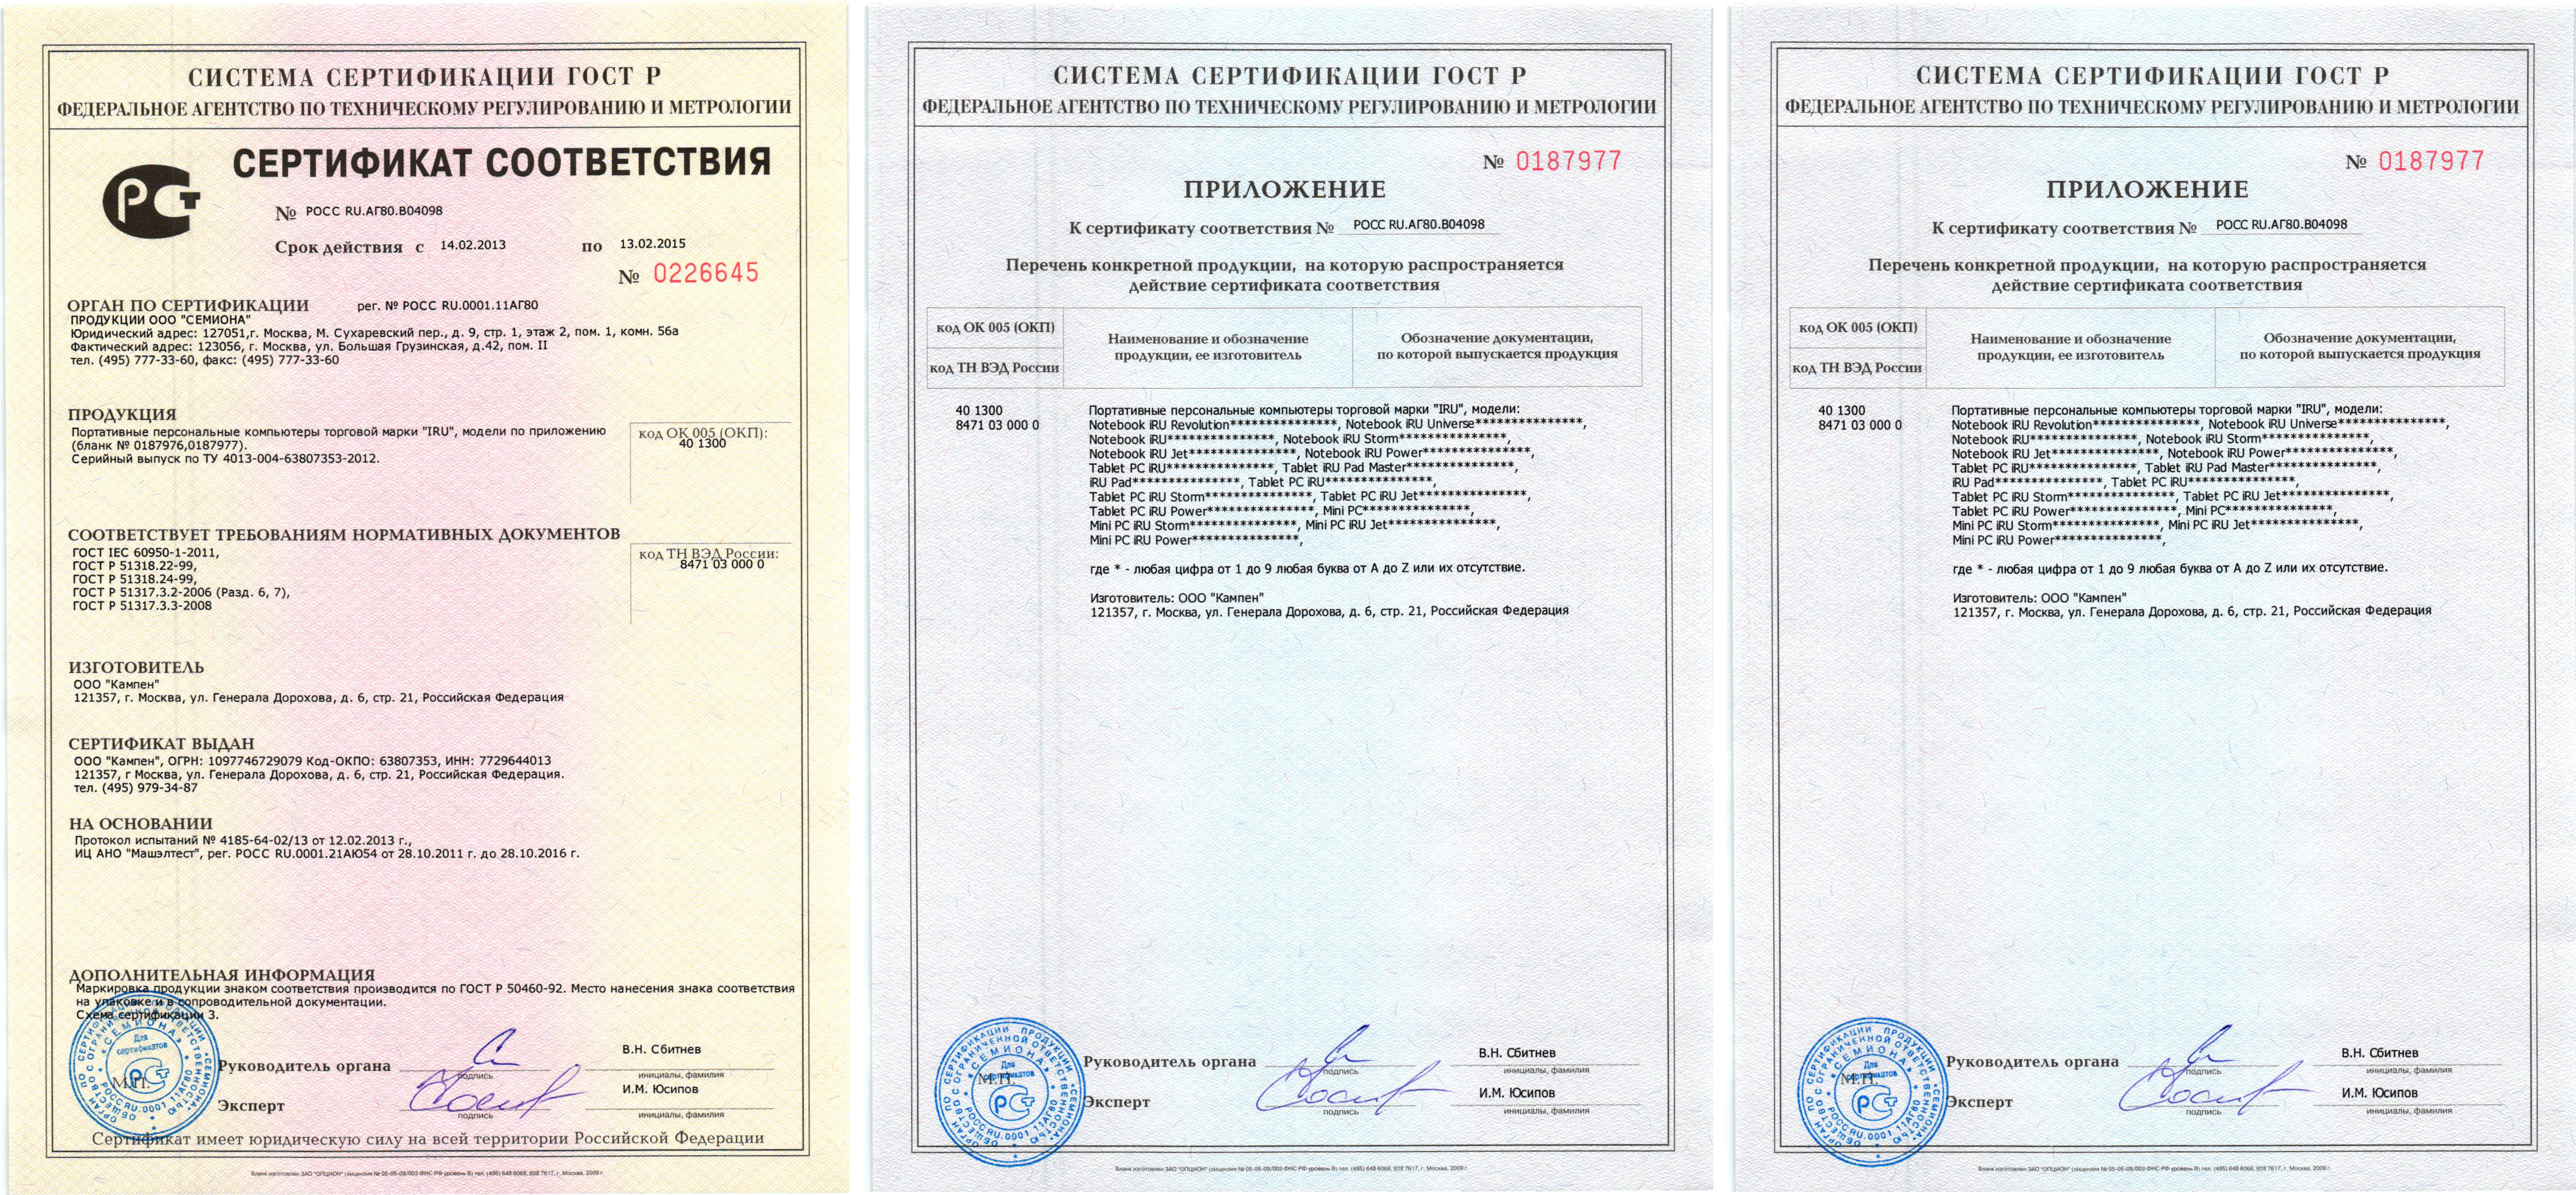 8 2 112 2. Сертификат соответствия. Сертификат соответствия на персональный компьютер. Сертификат соответствия на ПК. Сертификат на радиостанцию.